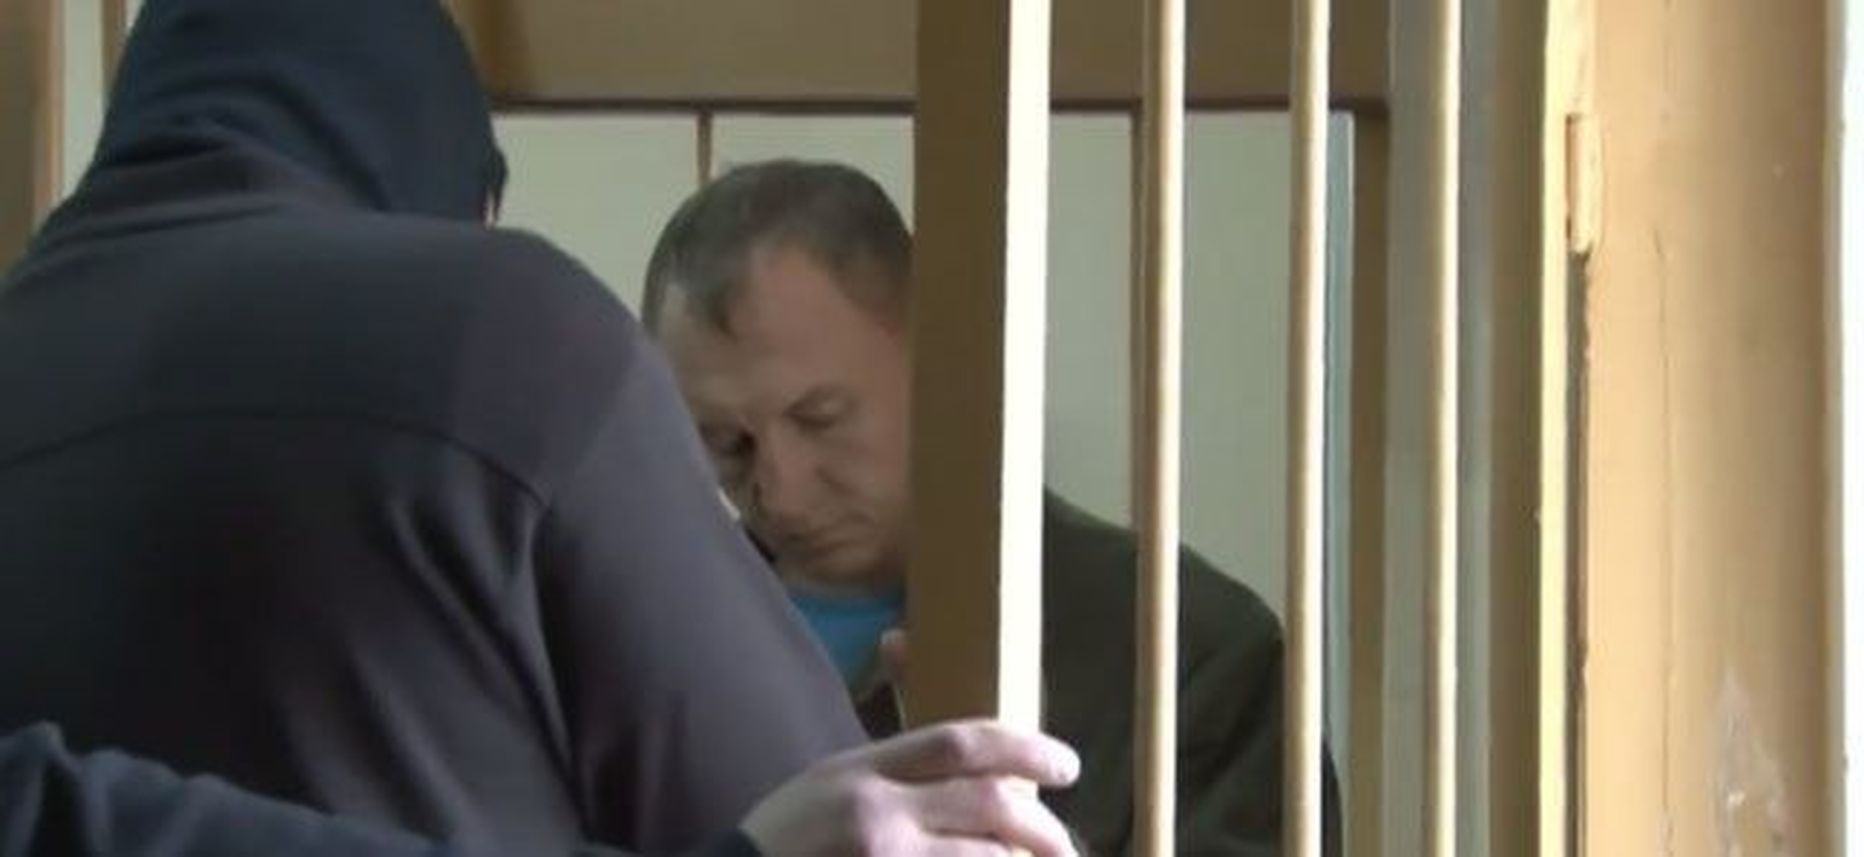 Venemaal vangis hoitav Eesti kaitsepolitei ametnik Eston Kohver.